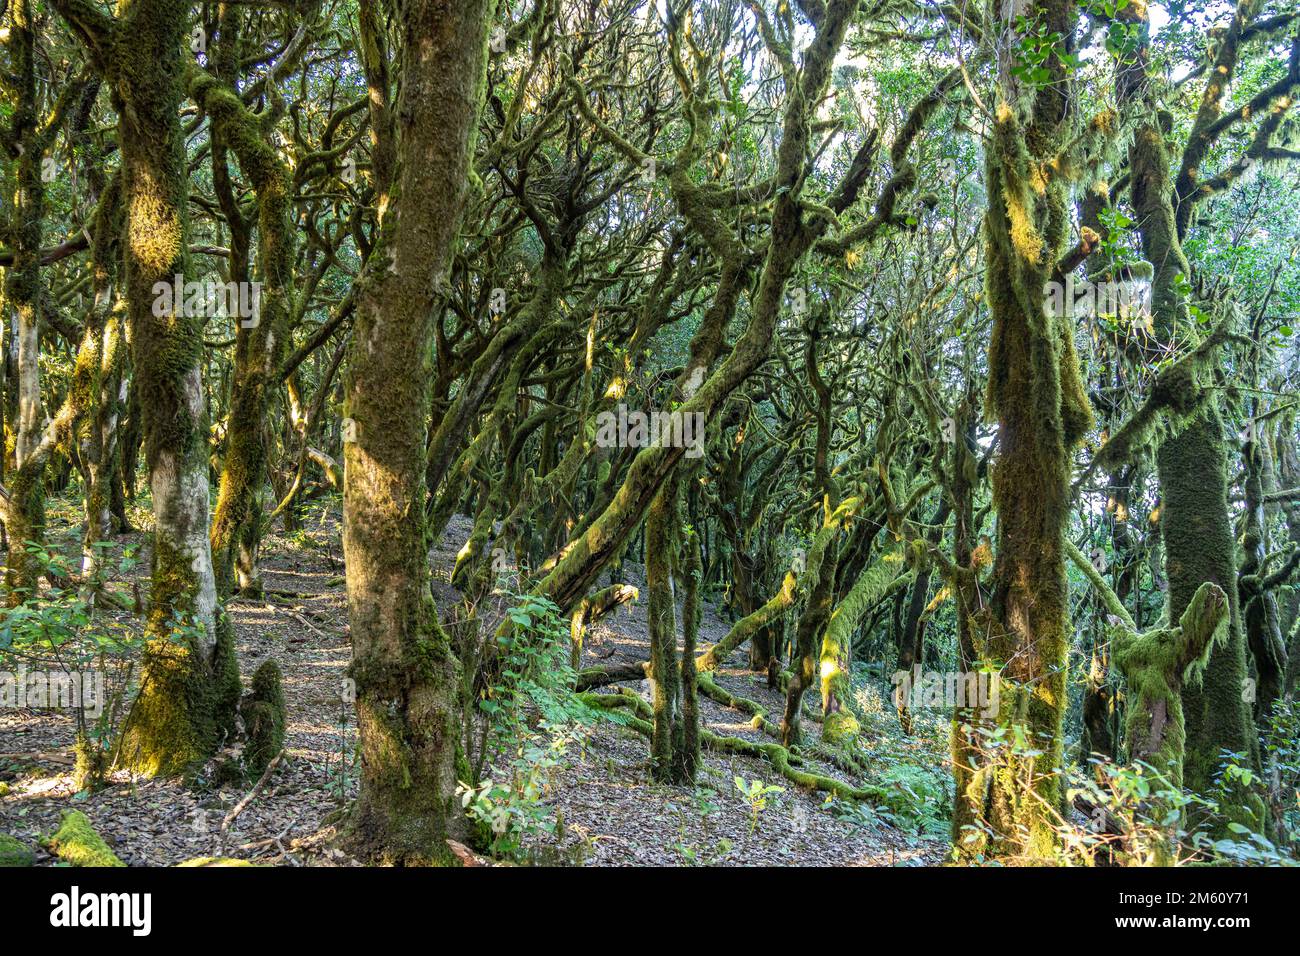 Wald im Nationalpark Garajonay, UNESCO Welterbe auf der Insel La Gomera, Kanarische Inseln, Spanien |  Garajonay National Park  forest on La Gomera, C Stock Photo